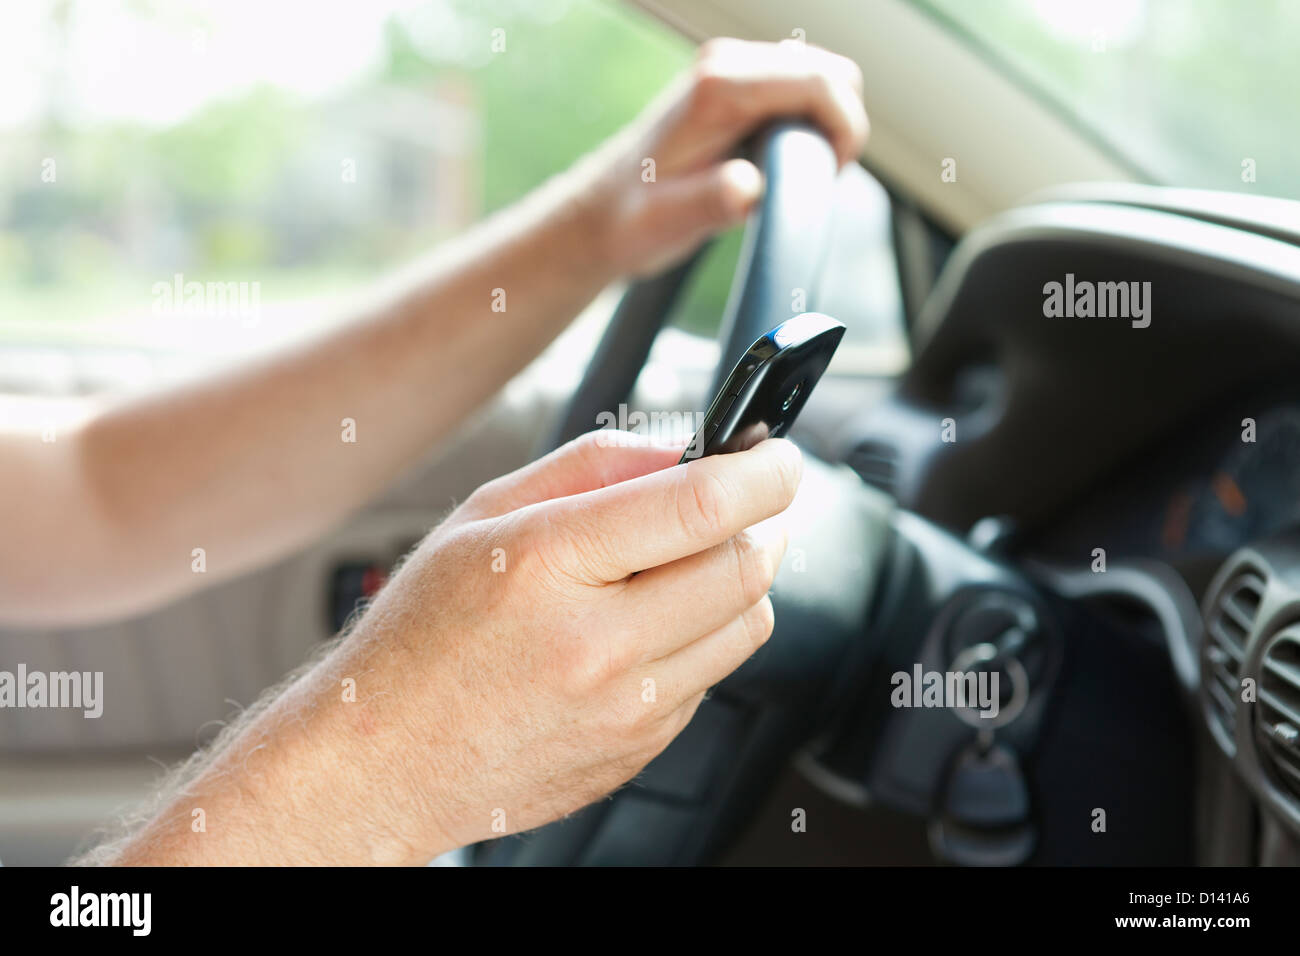 USA, Illinois, Metamora, Man texting on his mobile in car Stock Photo